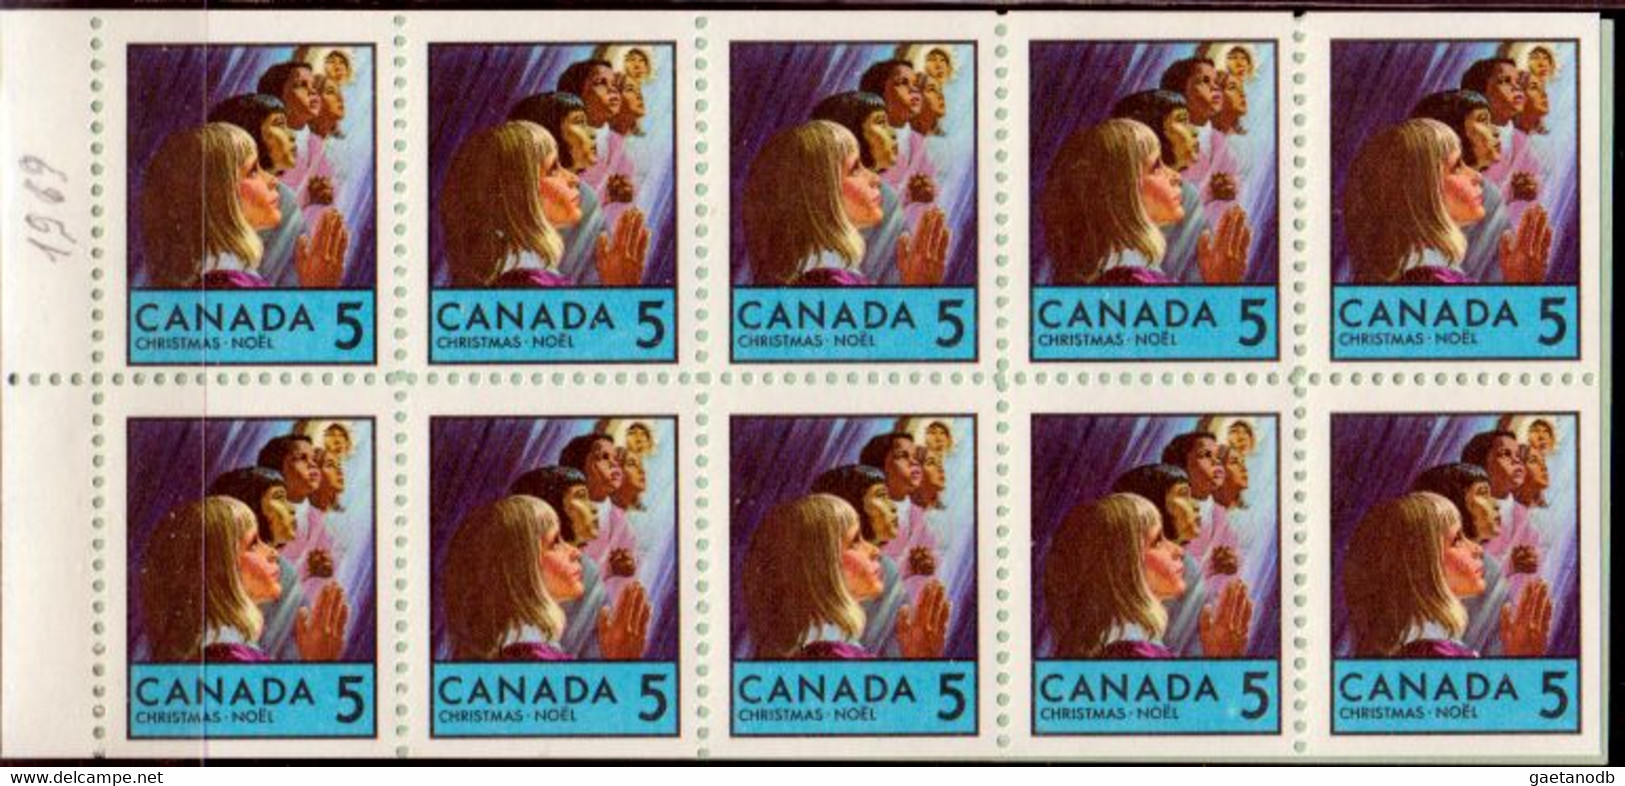 Canada-0060: Emissione 1969 (++) MNH - Qualità A Vostro Giudizio. - Booklets Pages